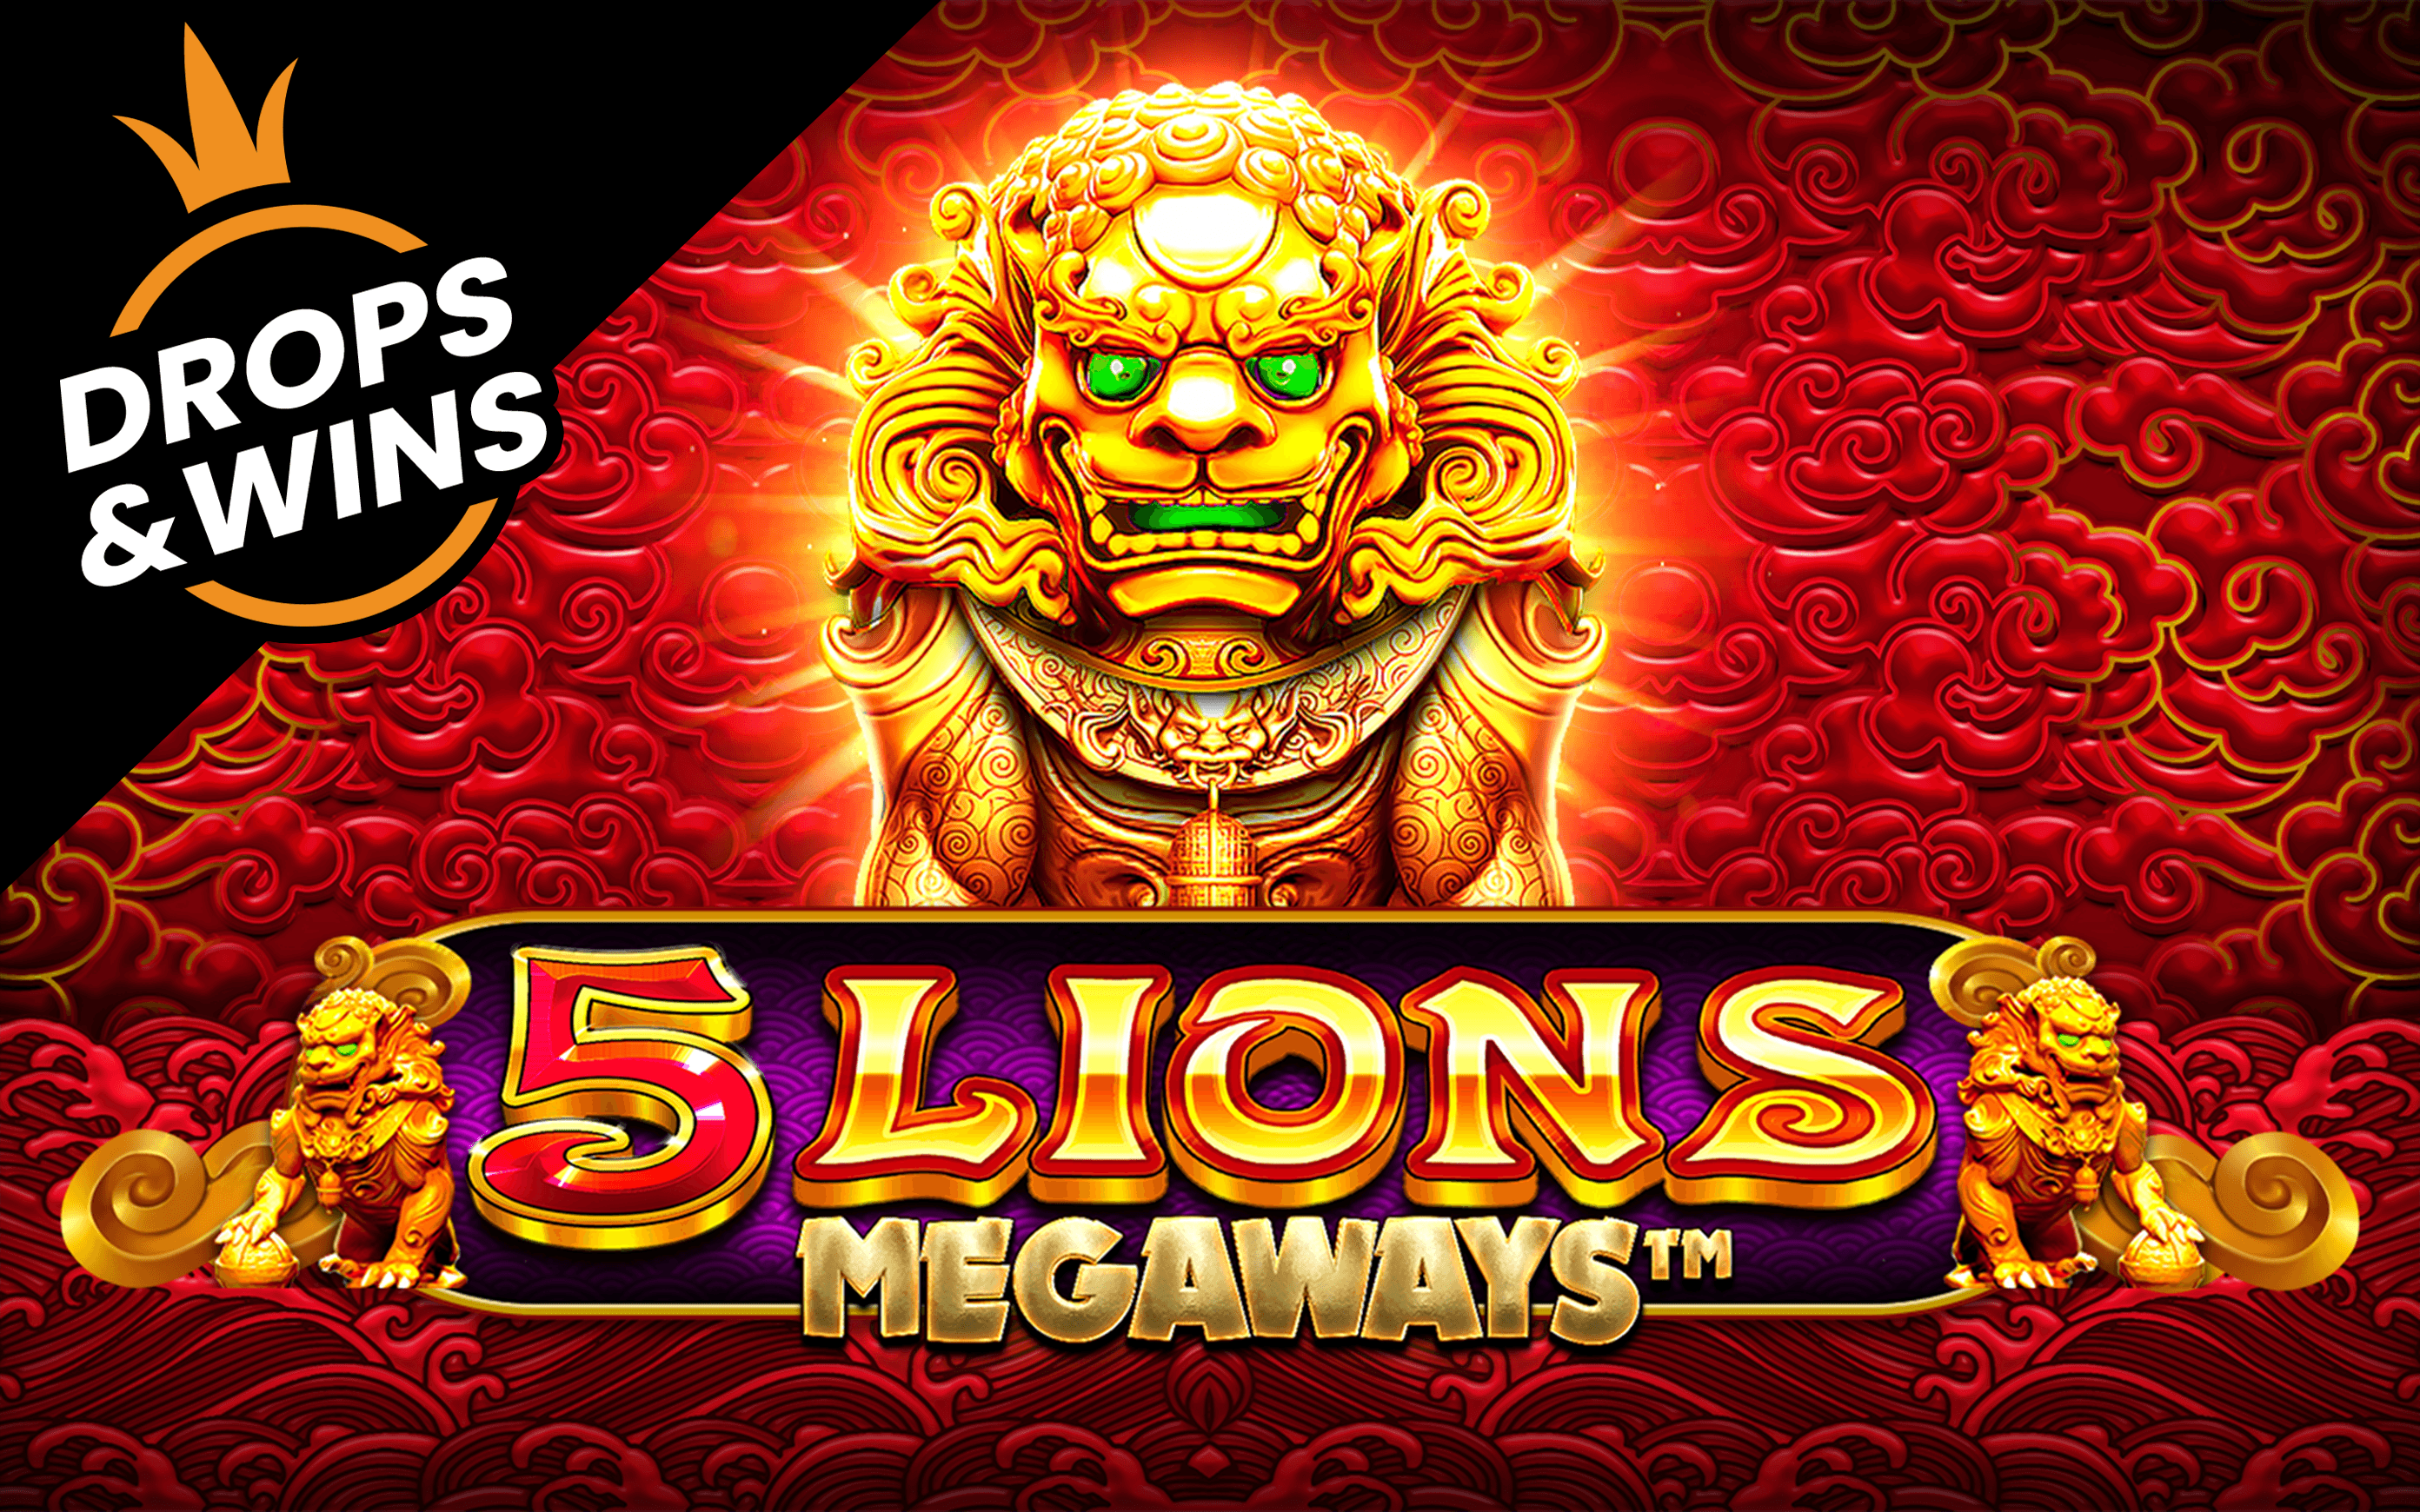 Играйте в 5 Lions Megaways™ в онлайн-казино Starcasino.be